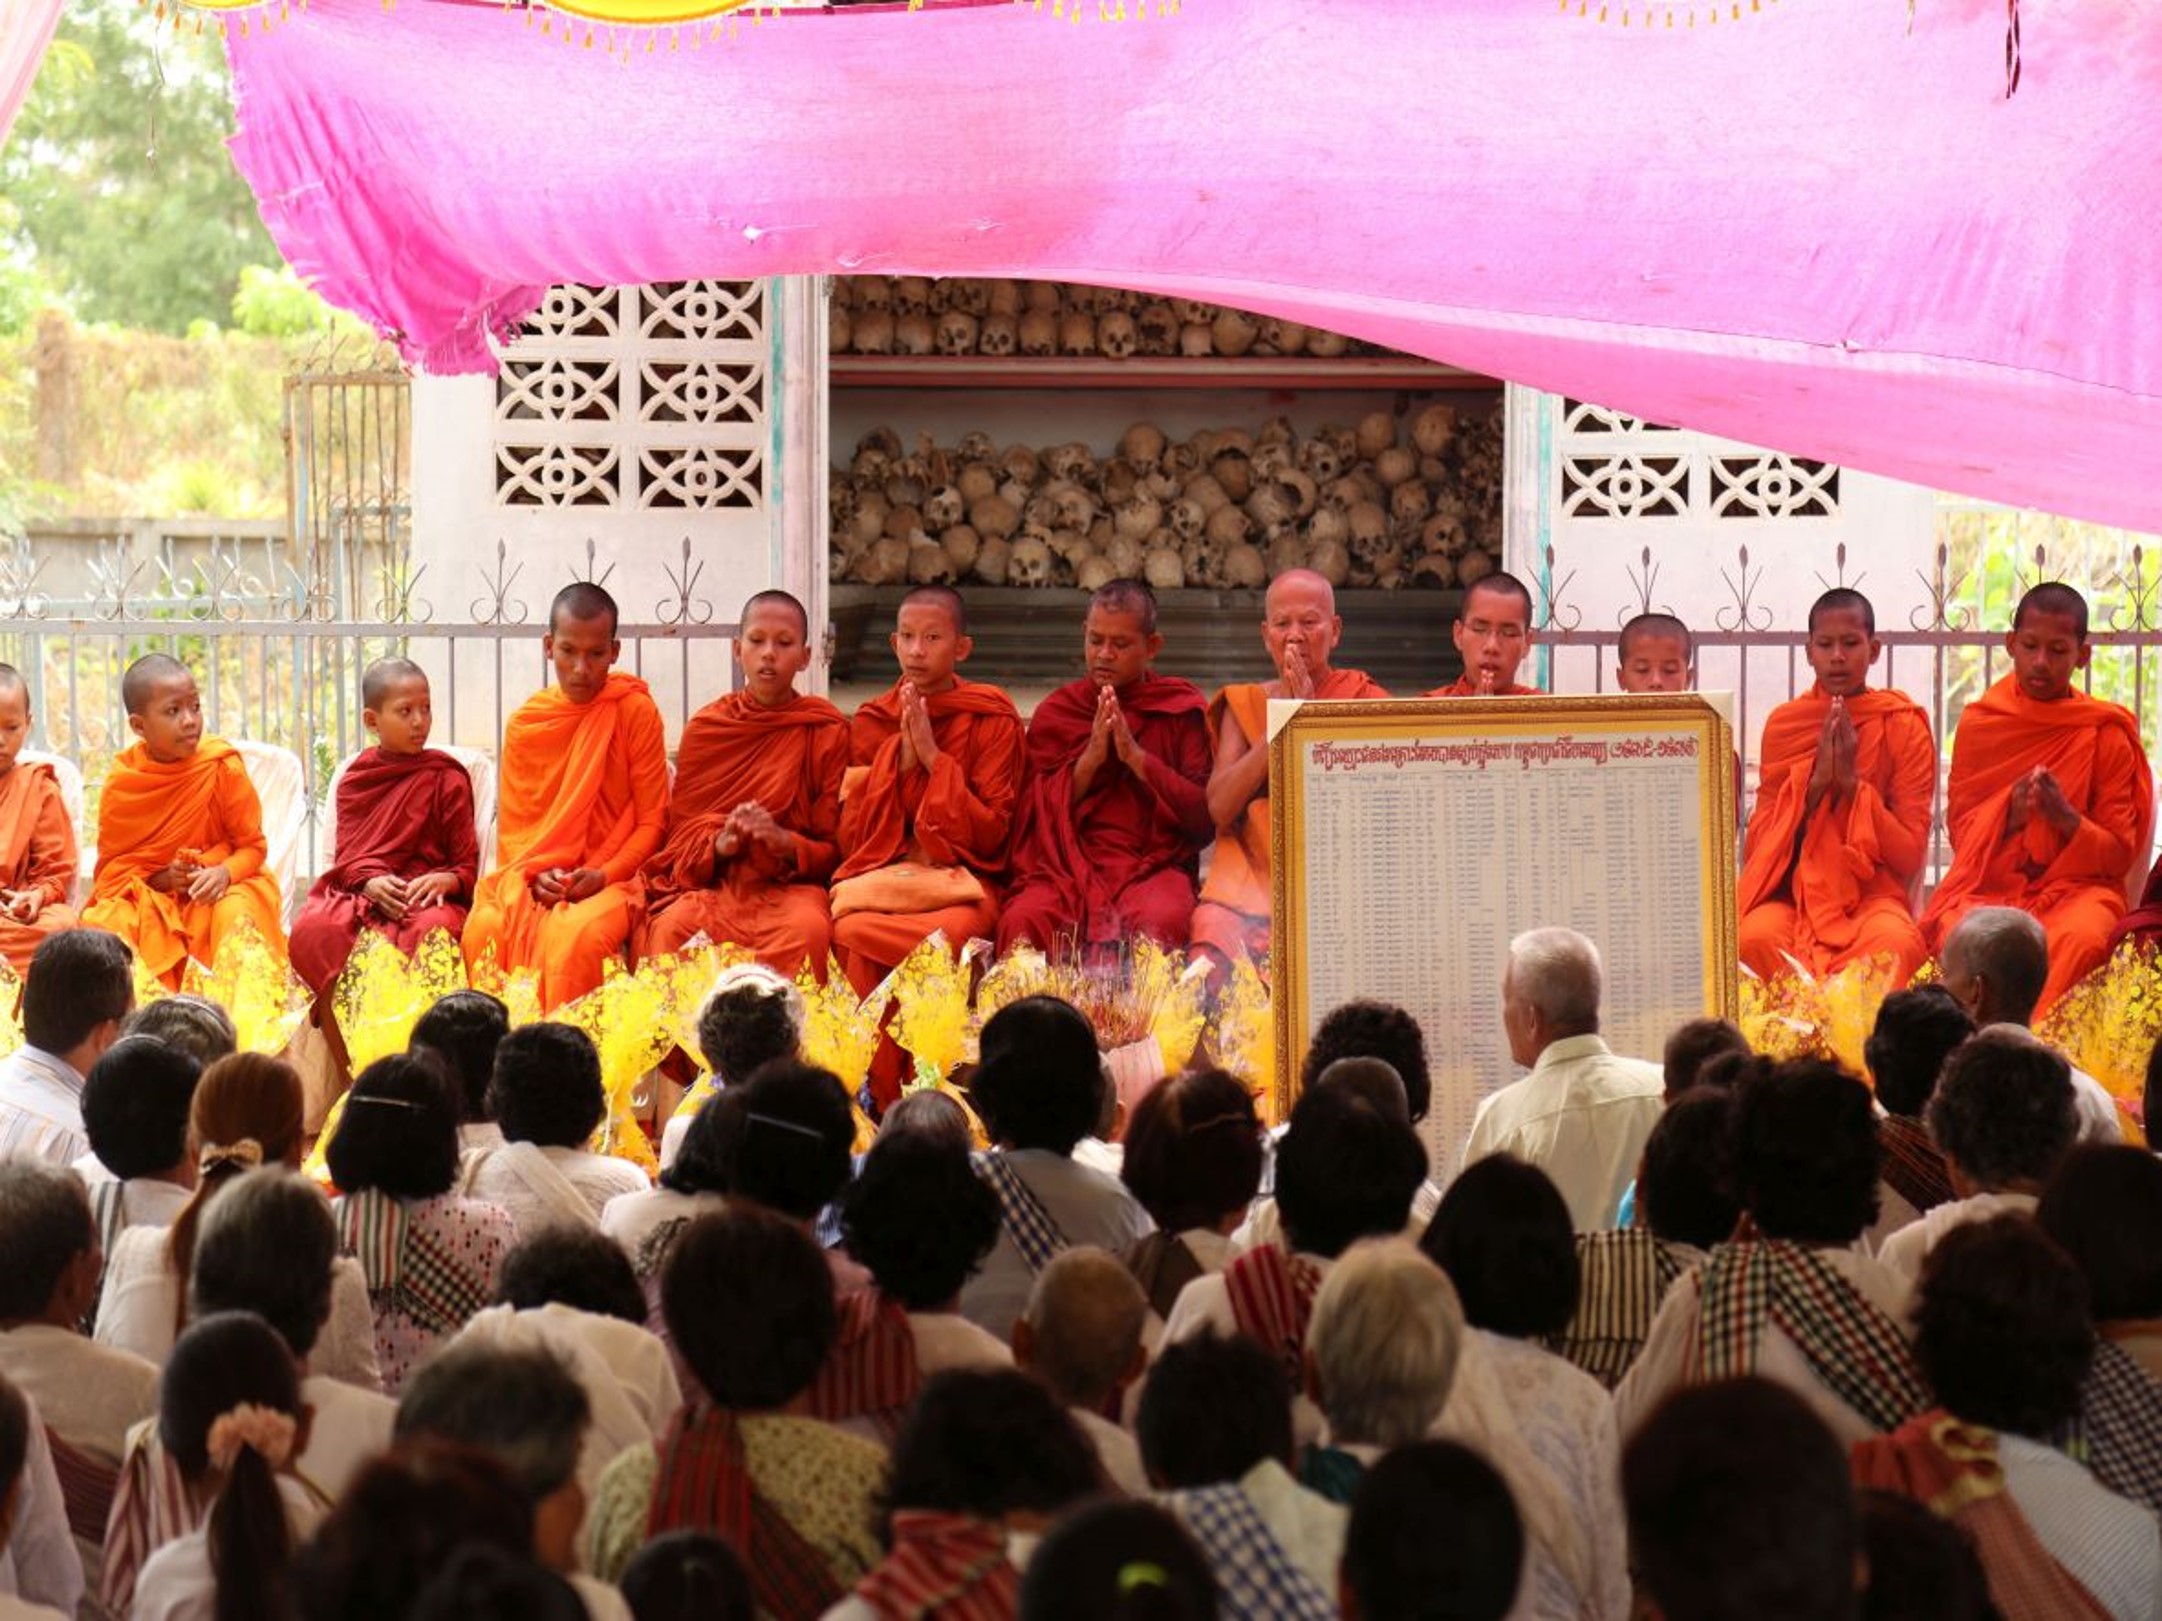 Fei­er­li­che bud­dhis­ti­sche Ze­re­mo­nie zur Wür­di­gung von Op­fern des Khmer-Rouge-Re­gimes in Kam­bo­dscha im Rah­men ei­nes Ver­söh­nungs­dia­logs von Ju­gend­li­chen und Über­le­ben­den